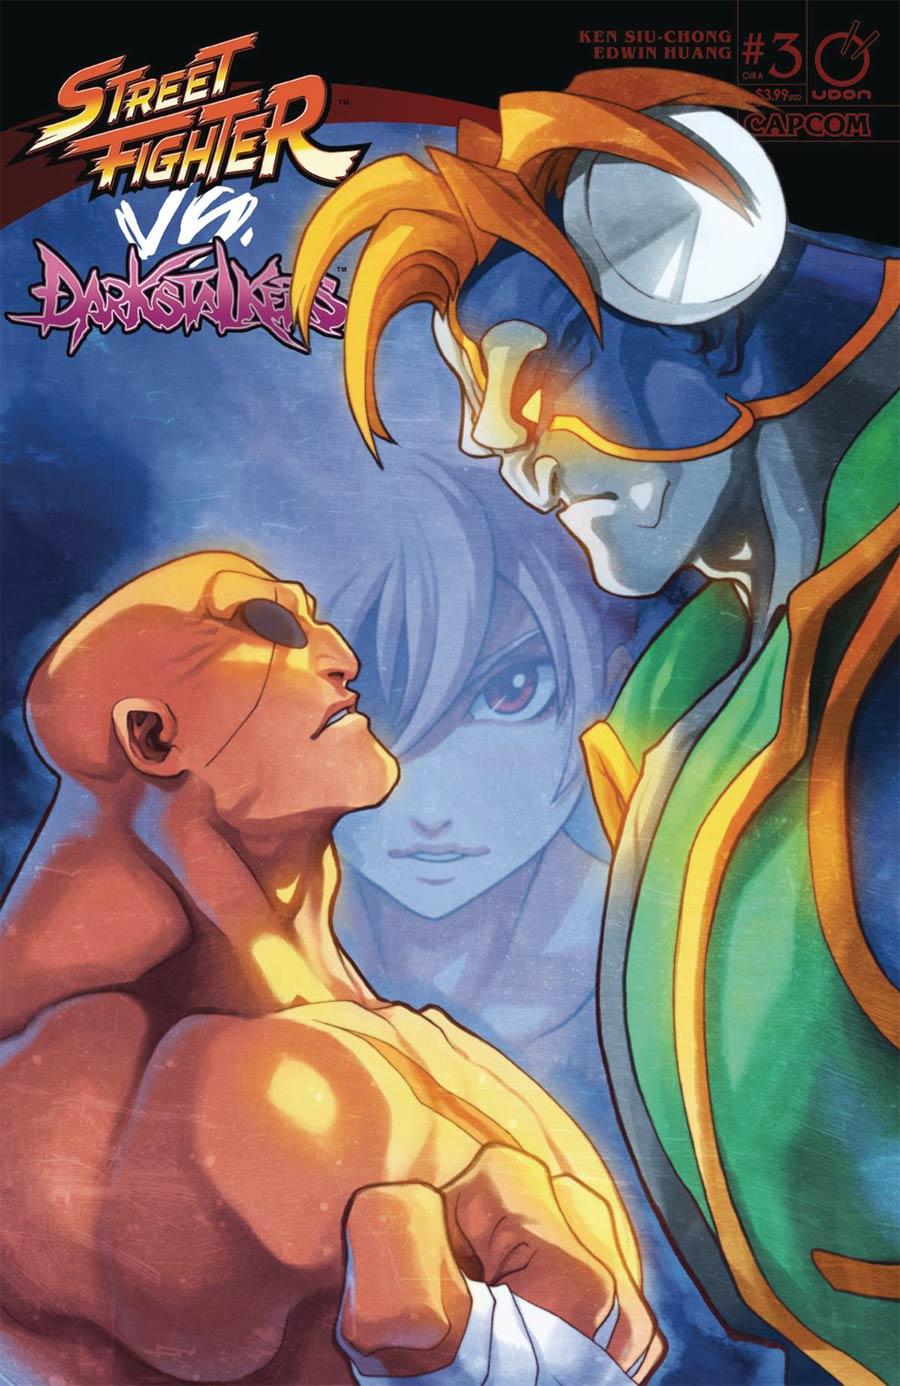 Street Fighter vs Darkstalkers Vol. 1 #3